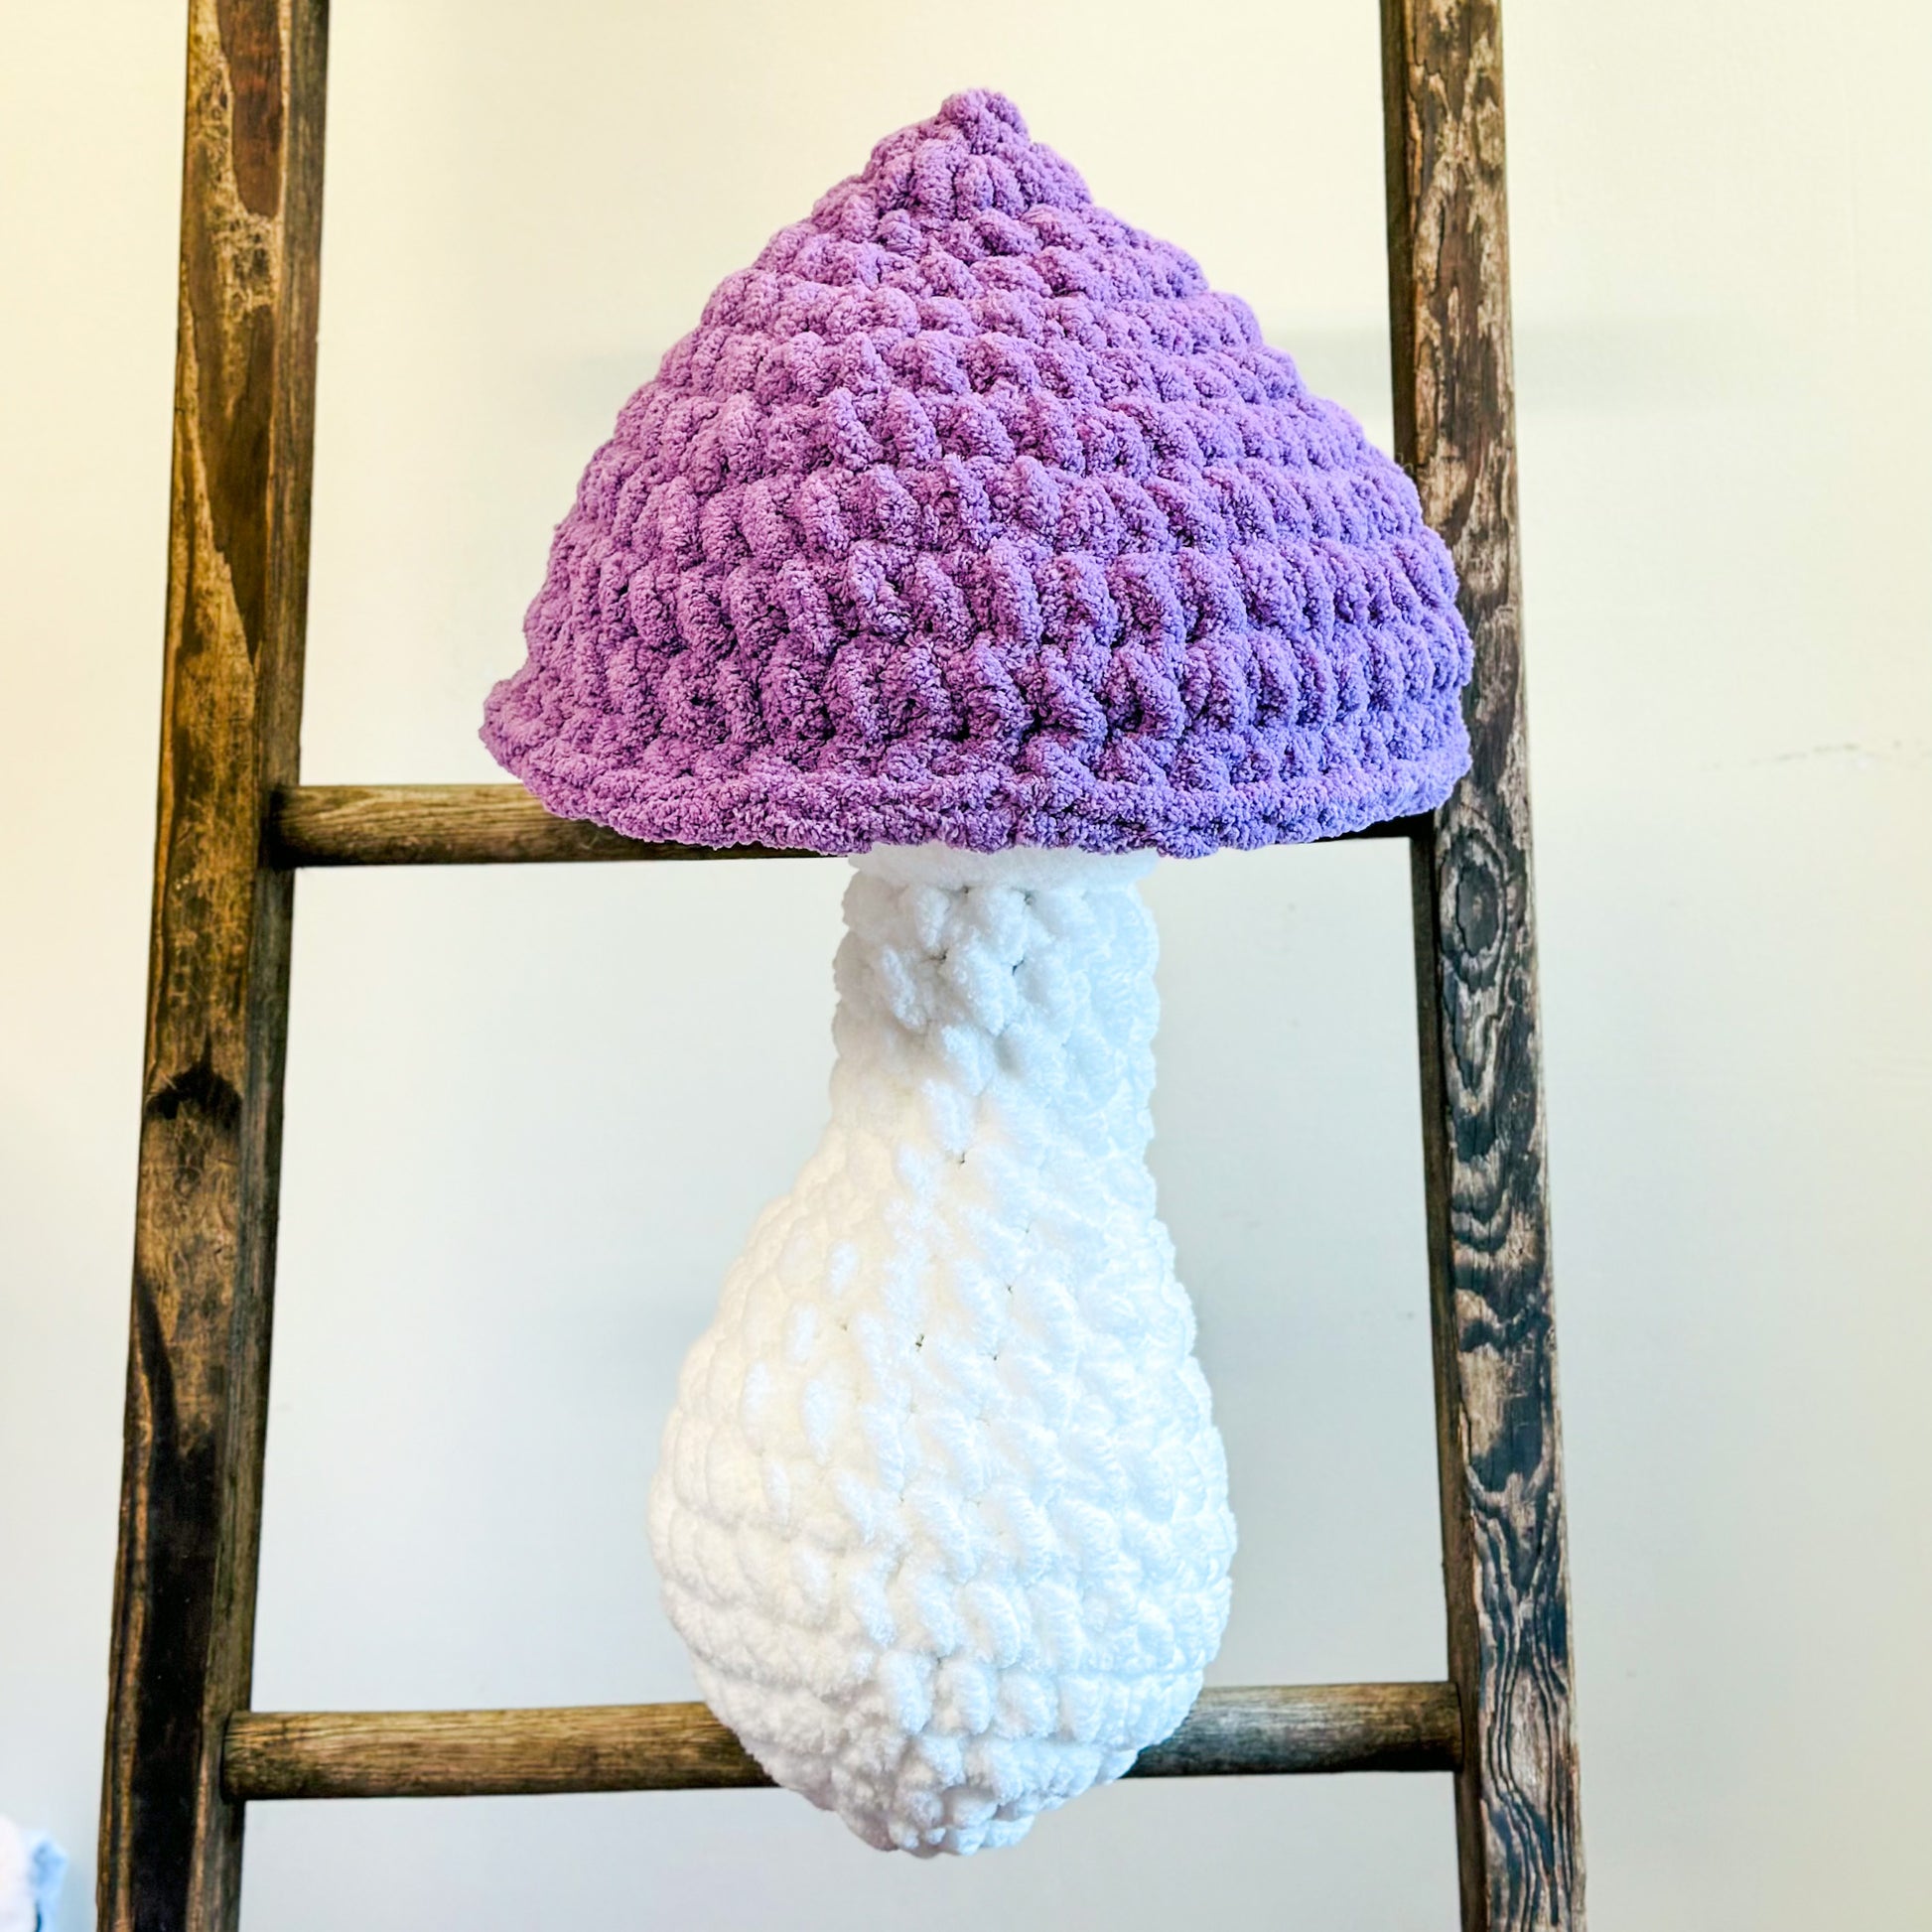 Giant Mushroom Pillow Crochet: Crochet pattern